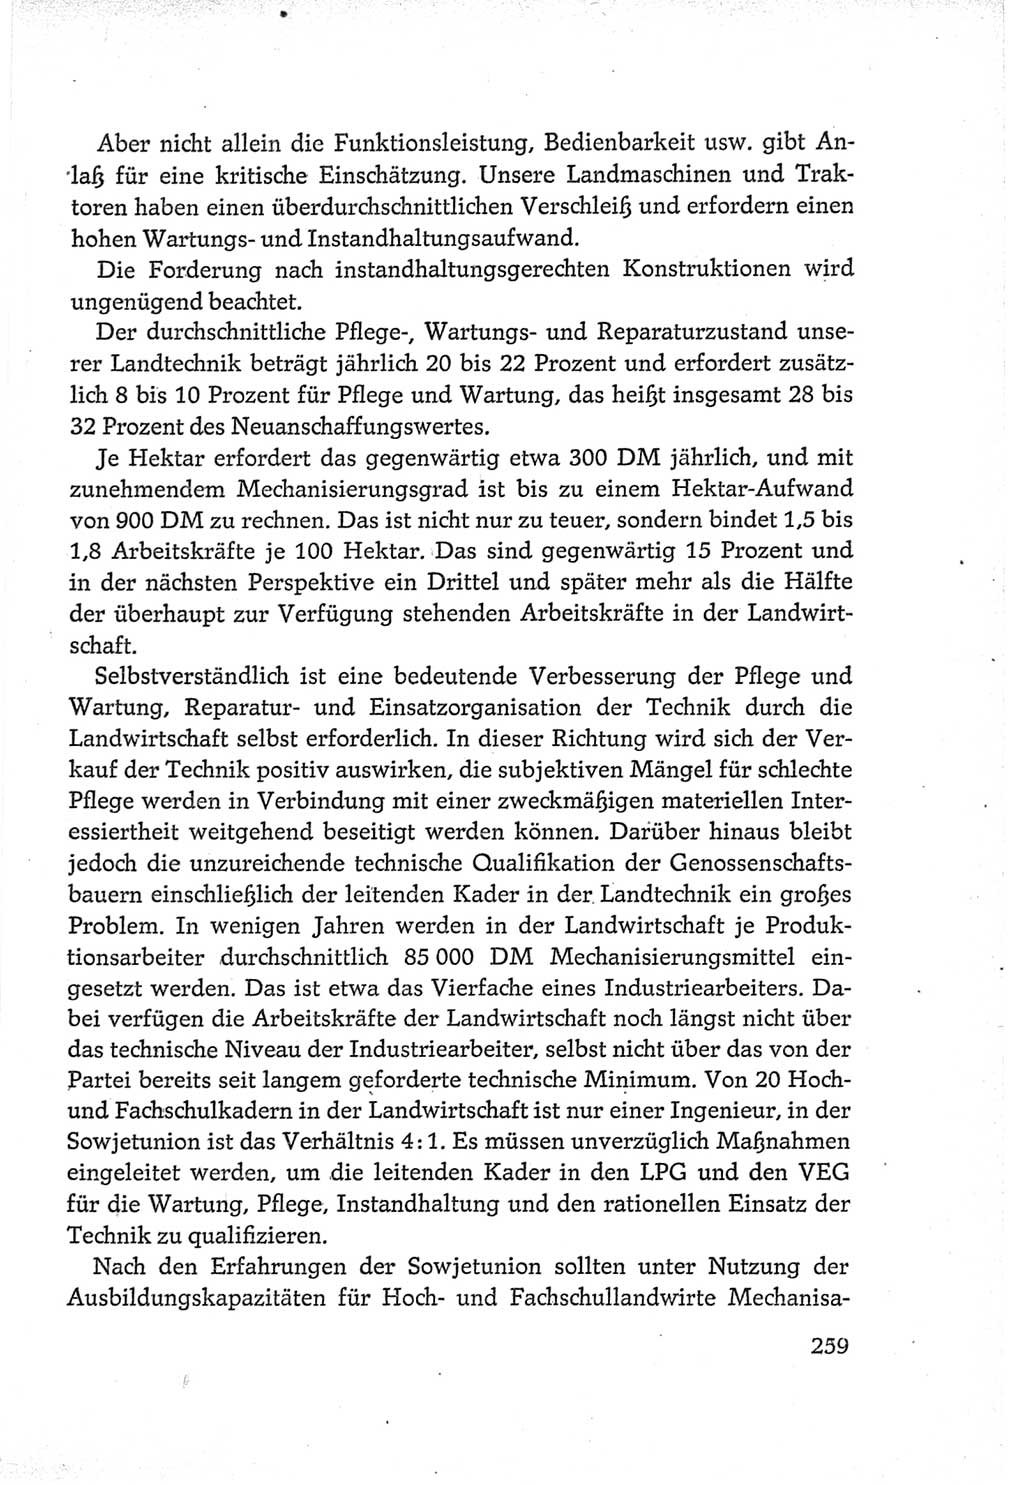 Protokoll der Verhandlungen des Ⅵ. Parteitages der Sozialistischen Einheitspartei Deutschlands (SED) [Deutsche Demokratische Republik (DDR)] 1963, Band Ⅲ, Seite 259 (Prot. Verh. Ⅵ. PT SED DDR 1963, Bd. Ⅲ, S. 259)